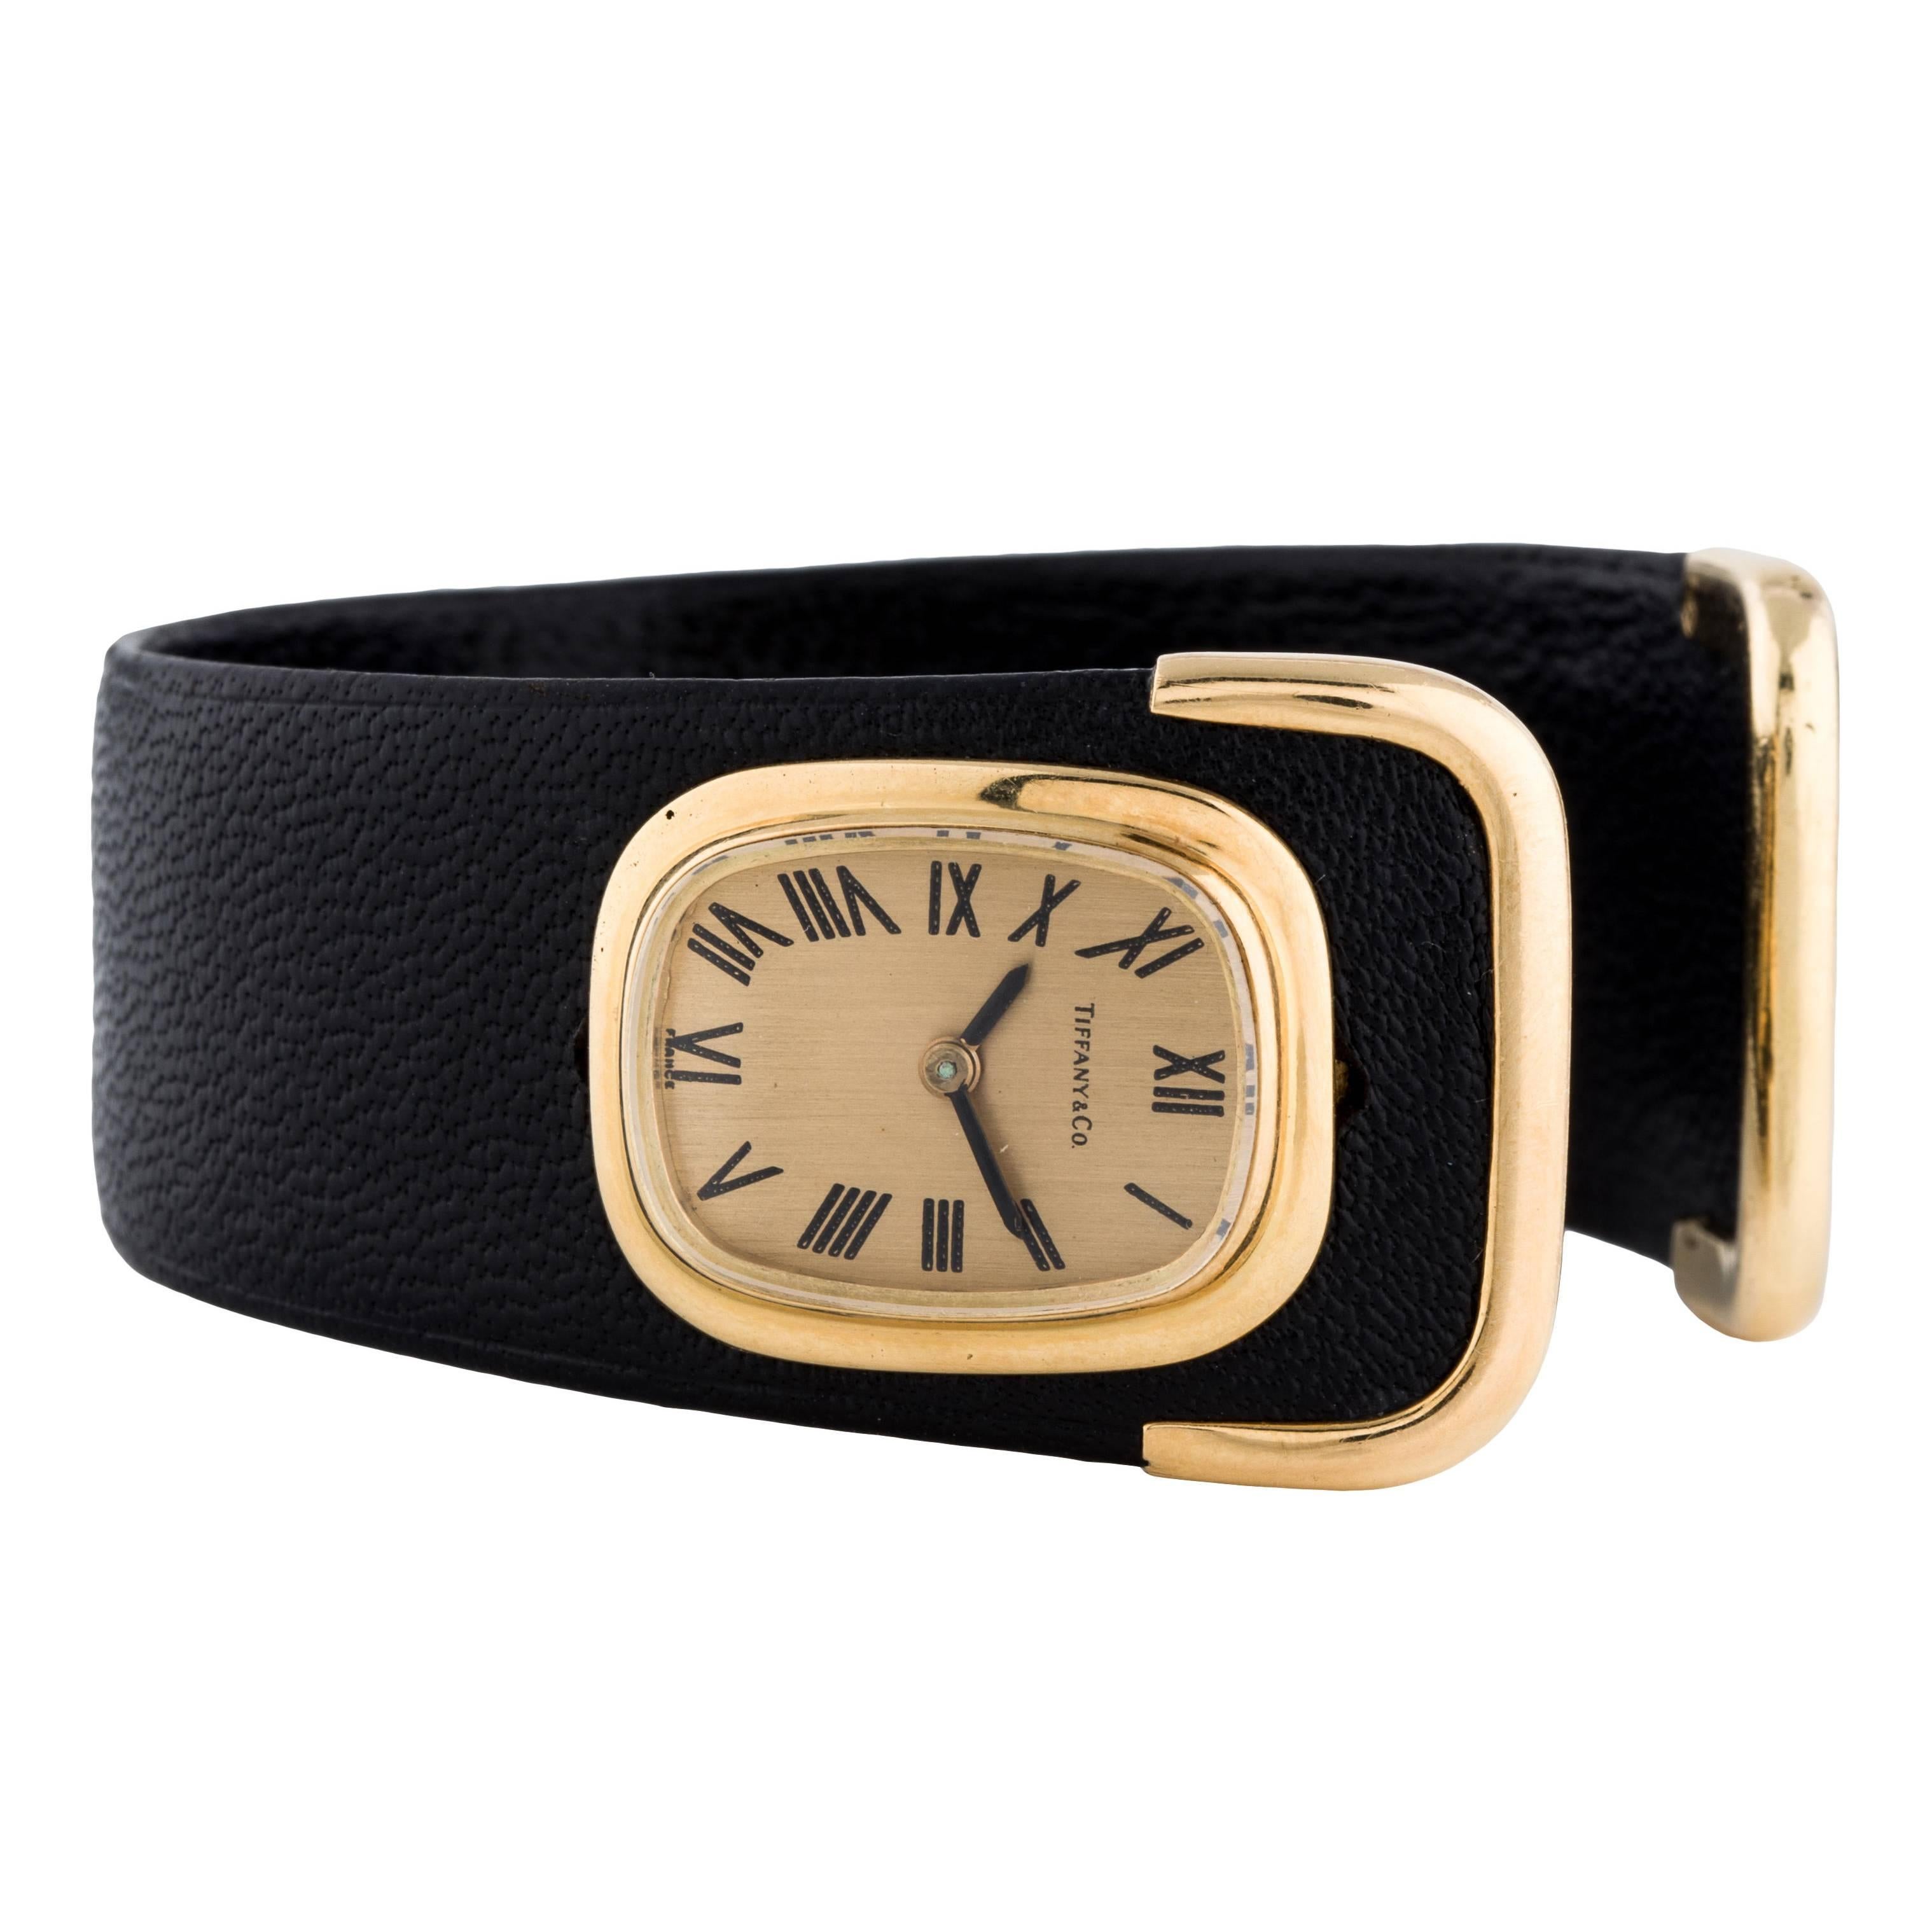 Tiffany & Co. Damen-Armbanduhr aus Gelbgold mit Ledermanschette